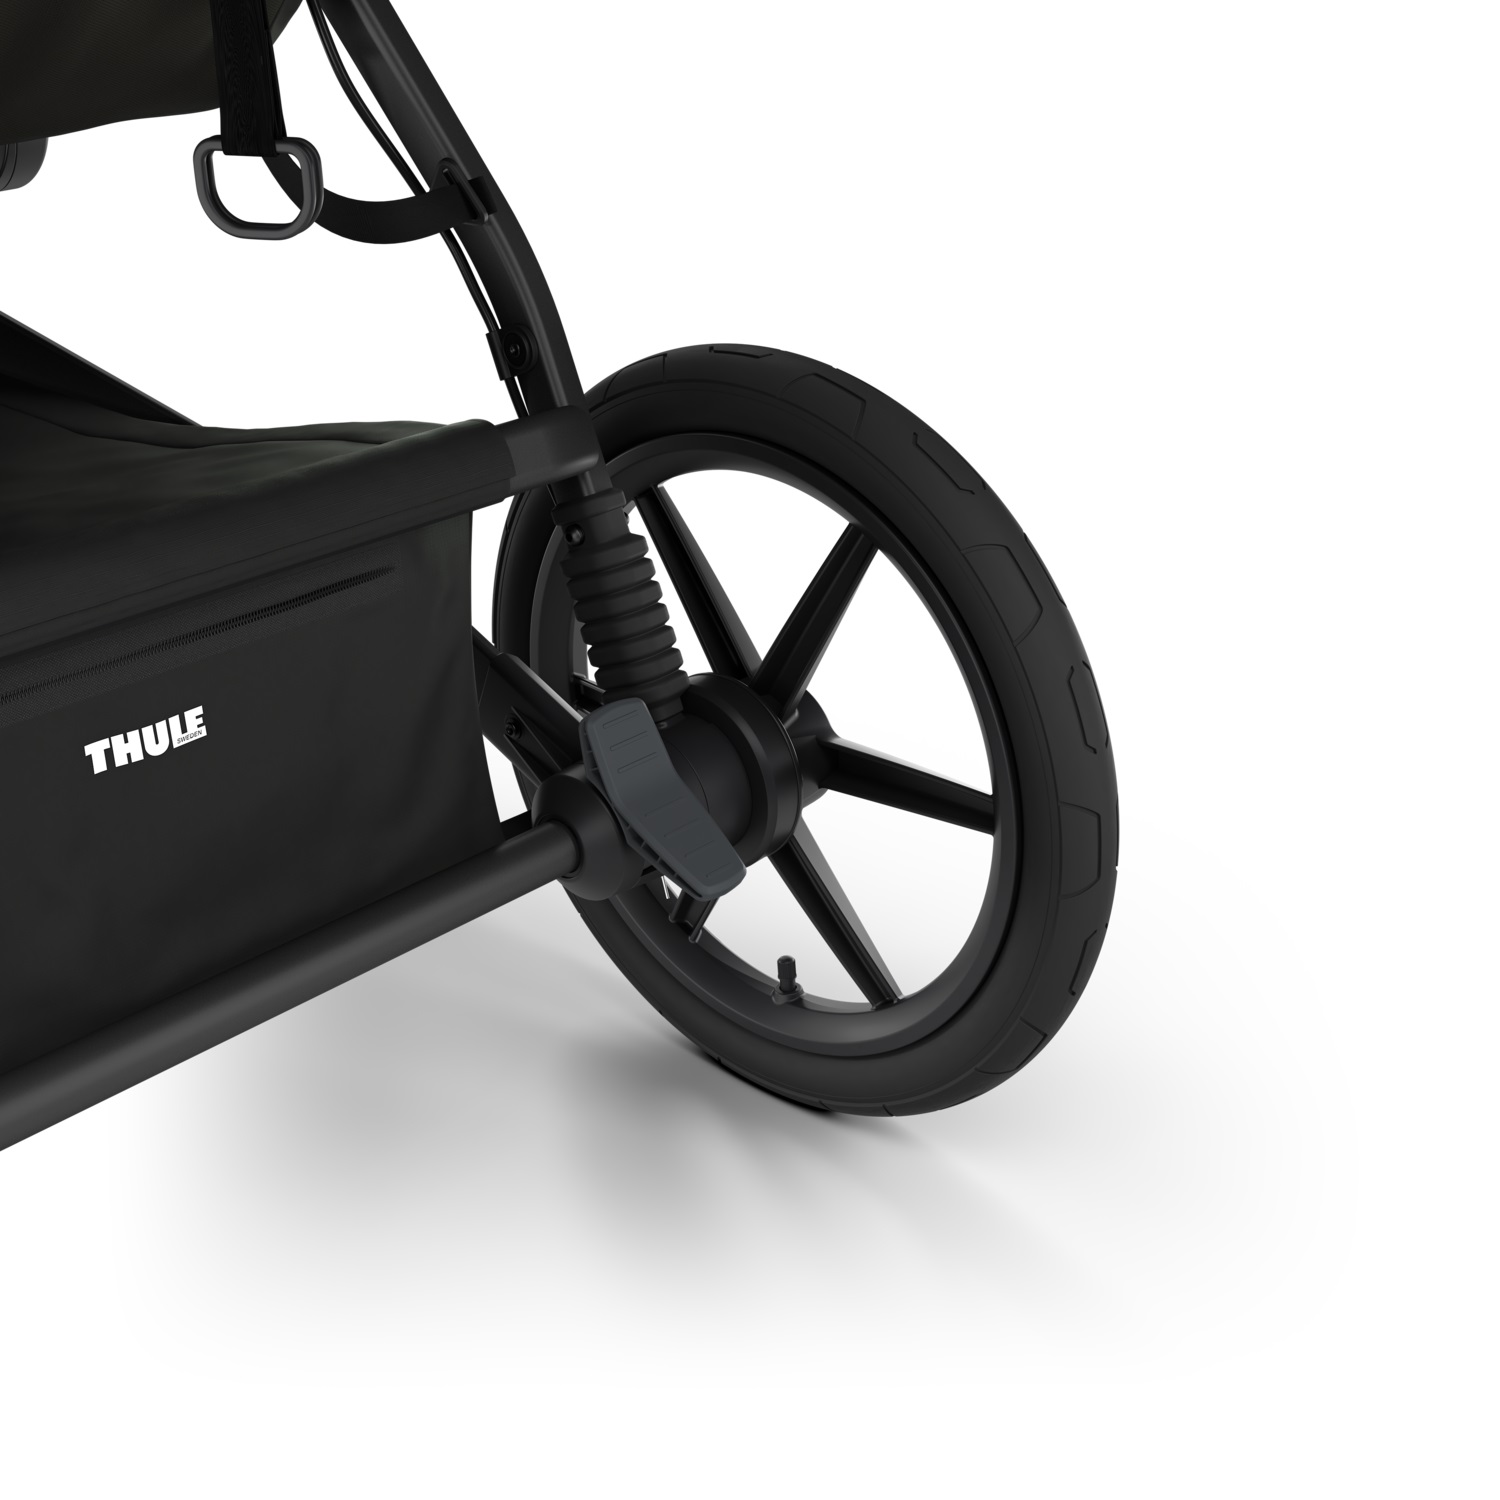 Thule Urban Glide (4 kotača) univerzalna kolica za sve terene - svjetloplava